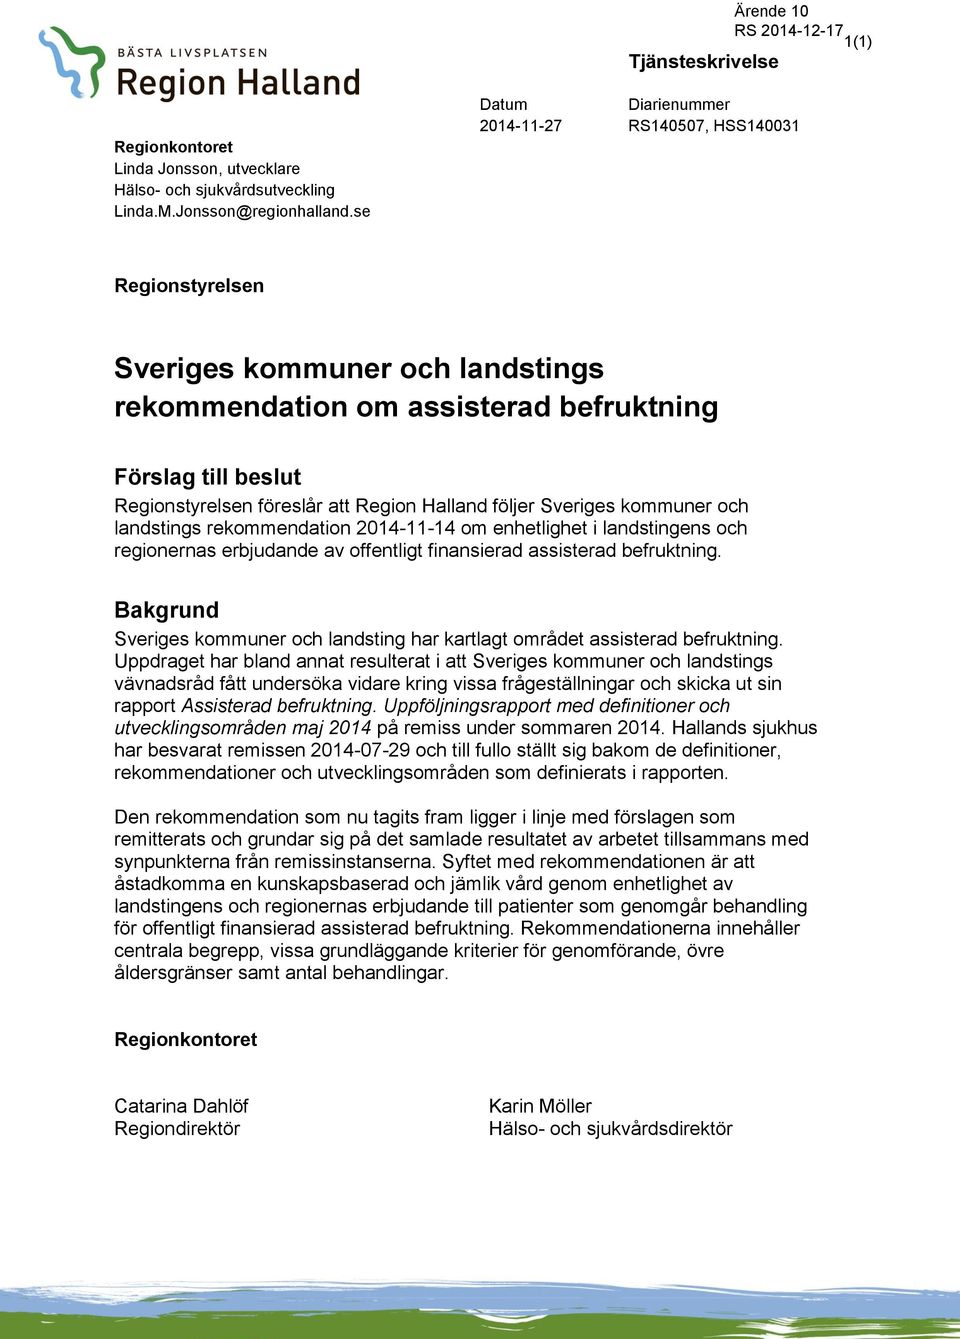 Halland följer Sveriges kommuner och landstings rekommendation 2014-11-14 om enhetlighet i landstingens och regionernas erbjudande av offentligt finansierad assisterad befruktning.